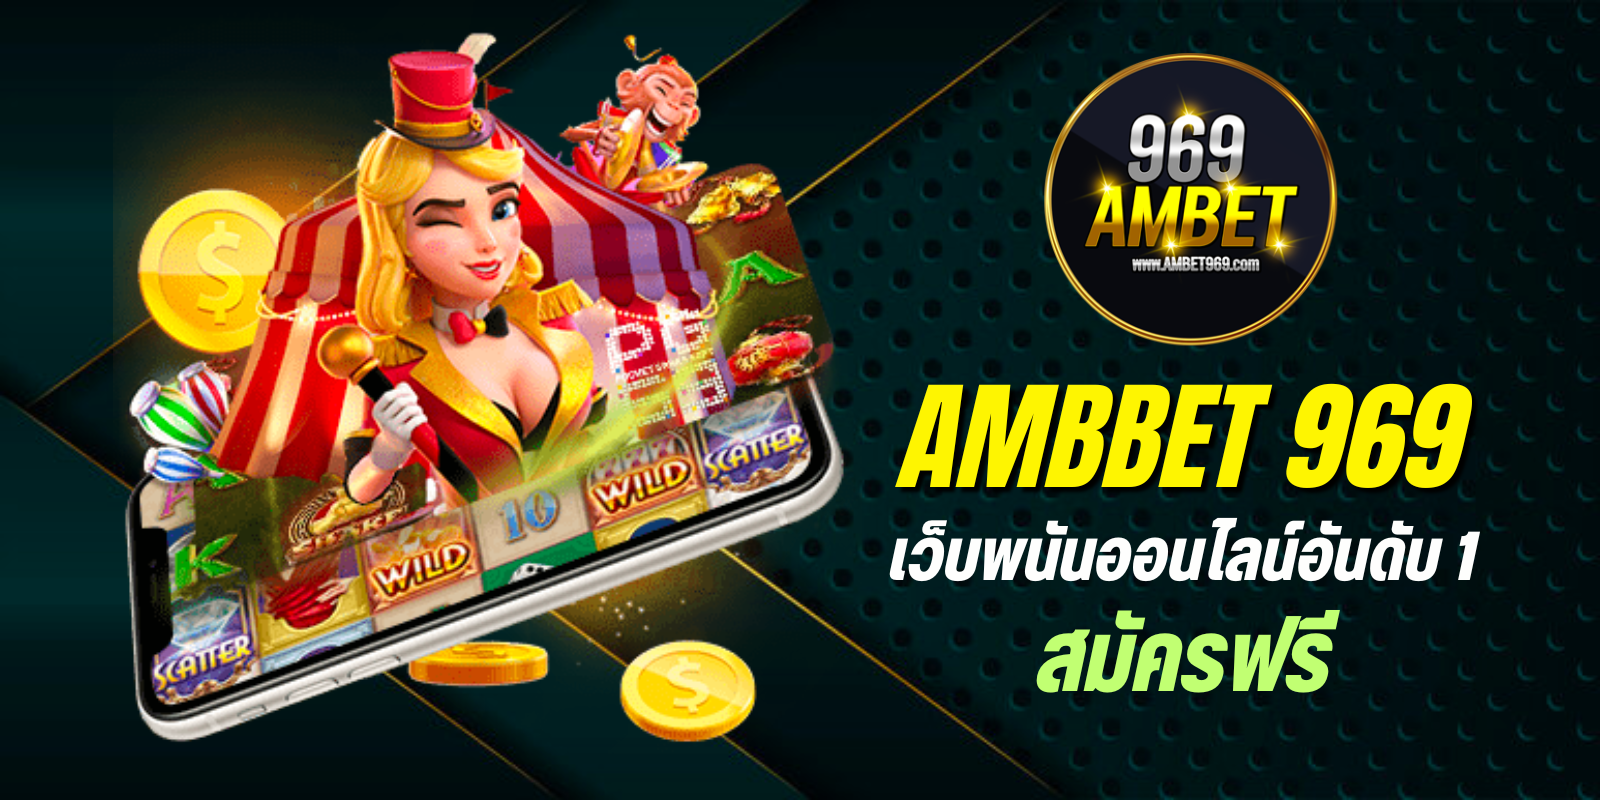 ambbet 969 เว็บพนันออนไลน์อันดับ1 สมัครฟรี